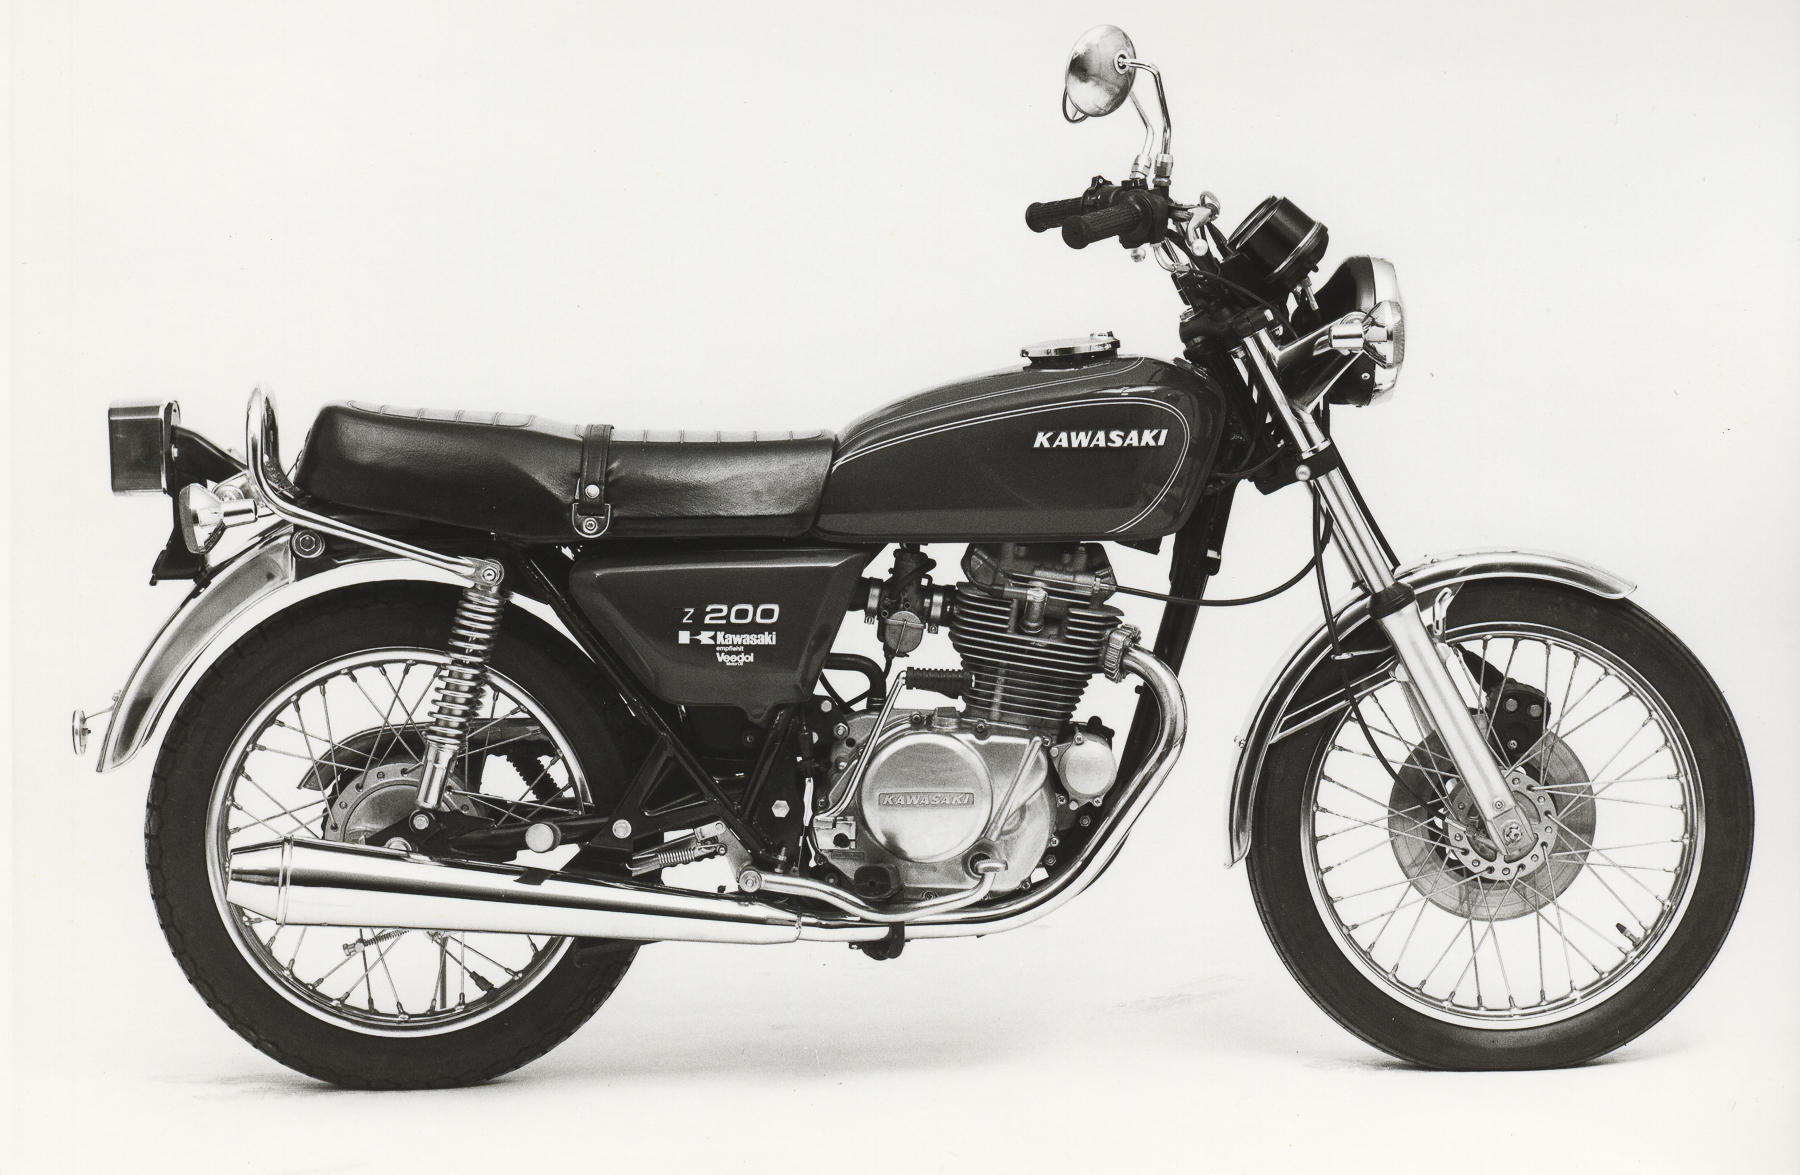 Kawasaki Z 200 1979 photo - 3